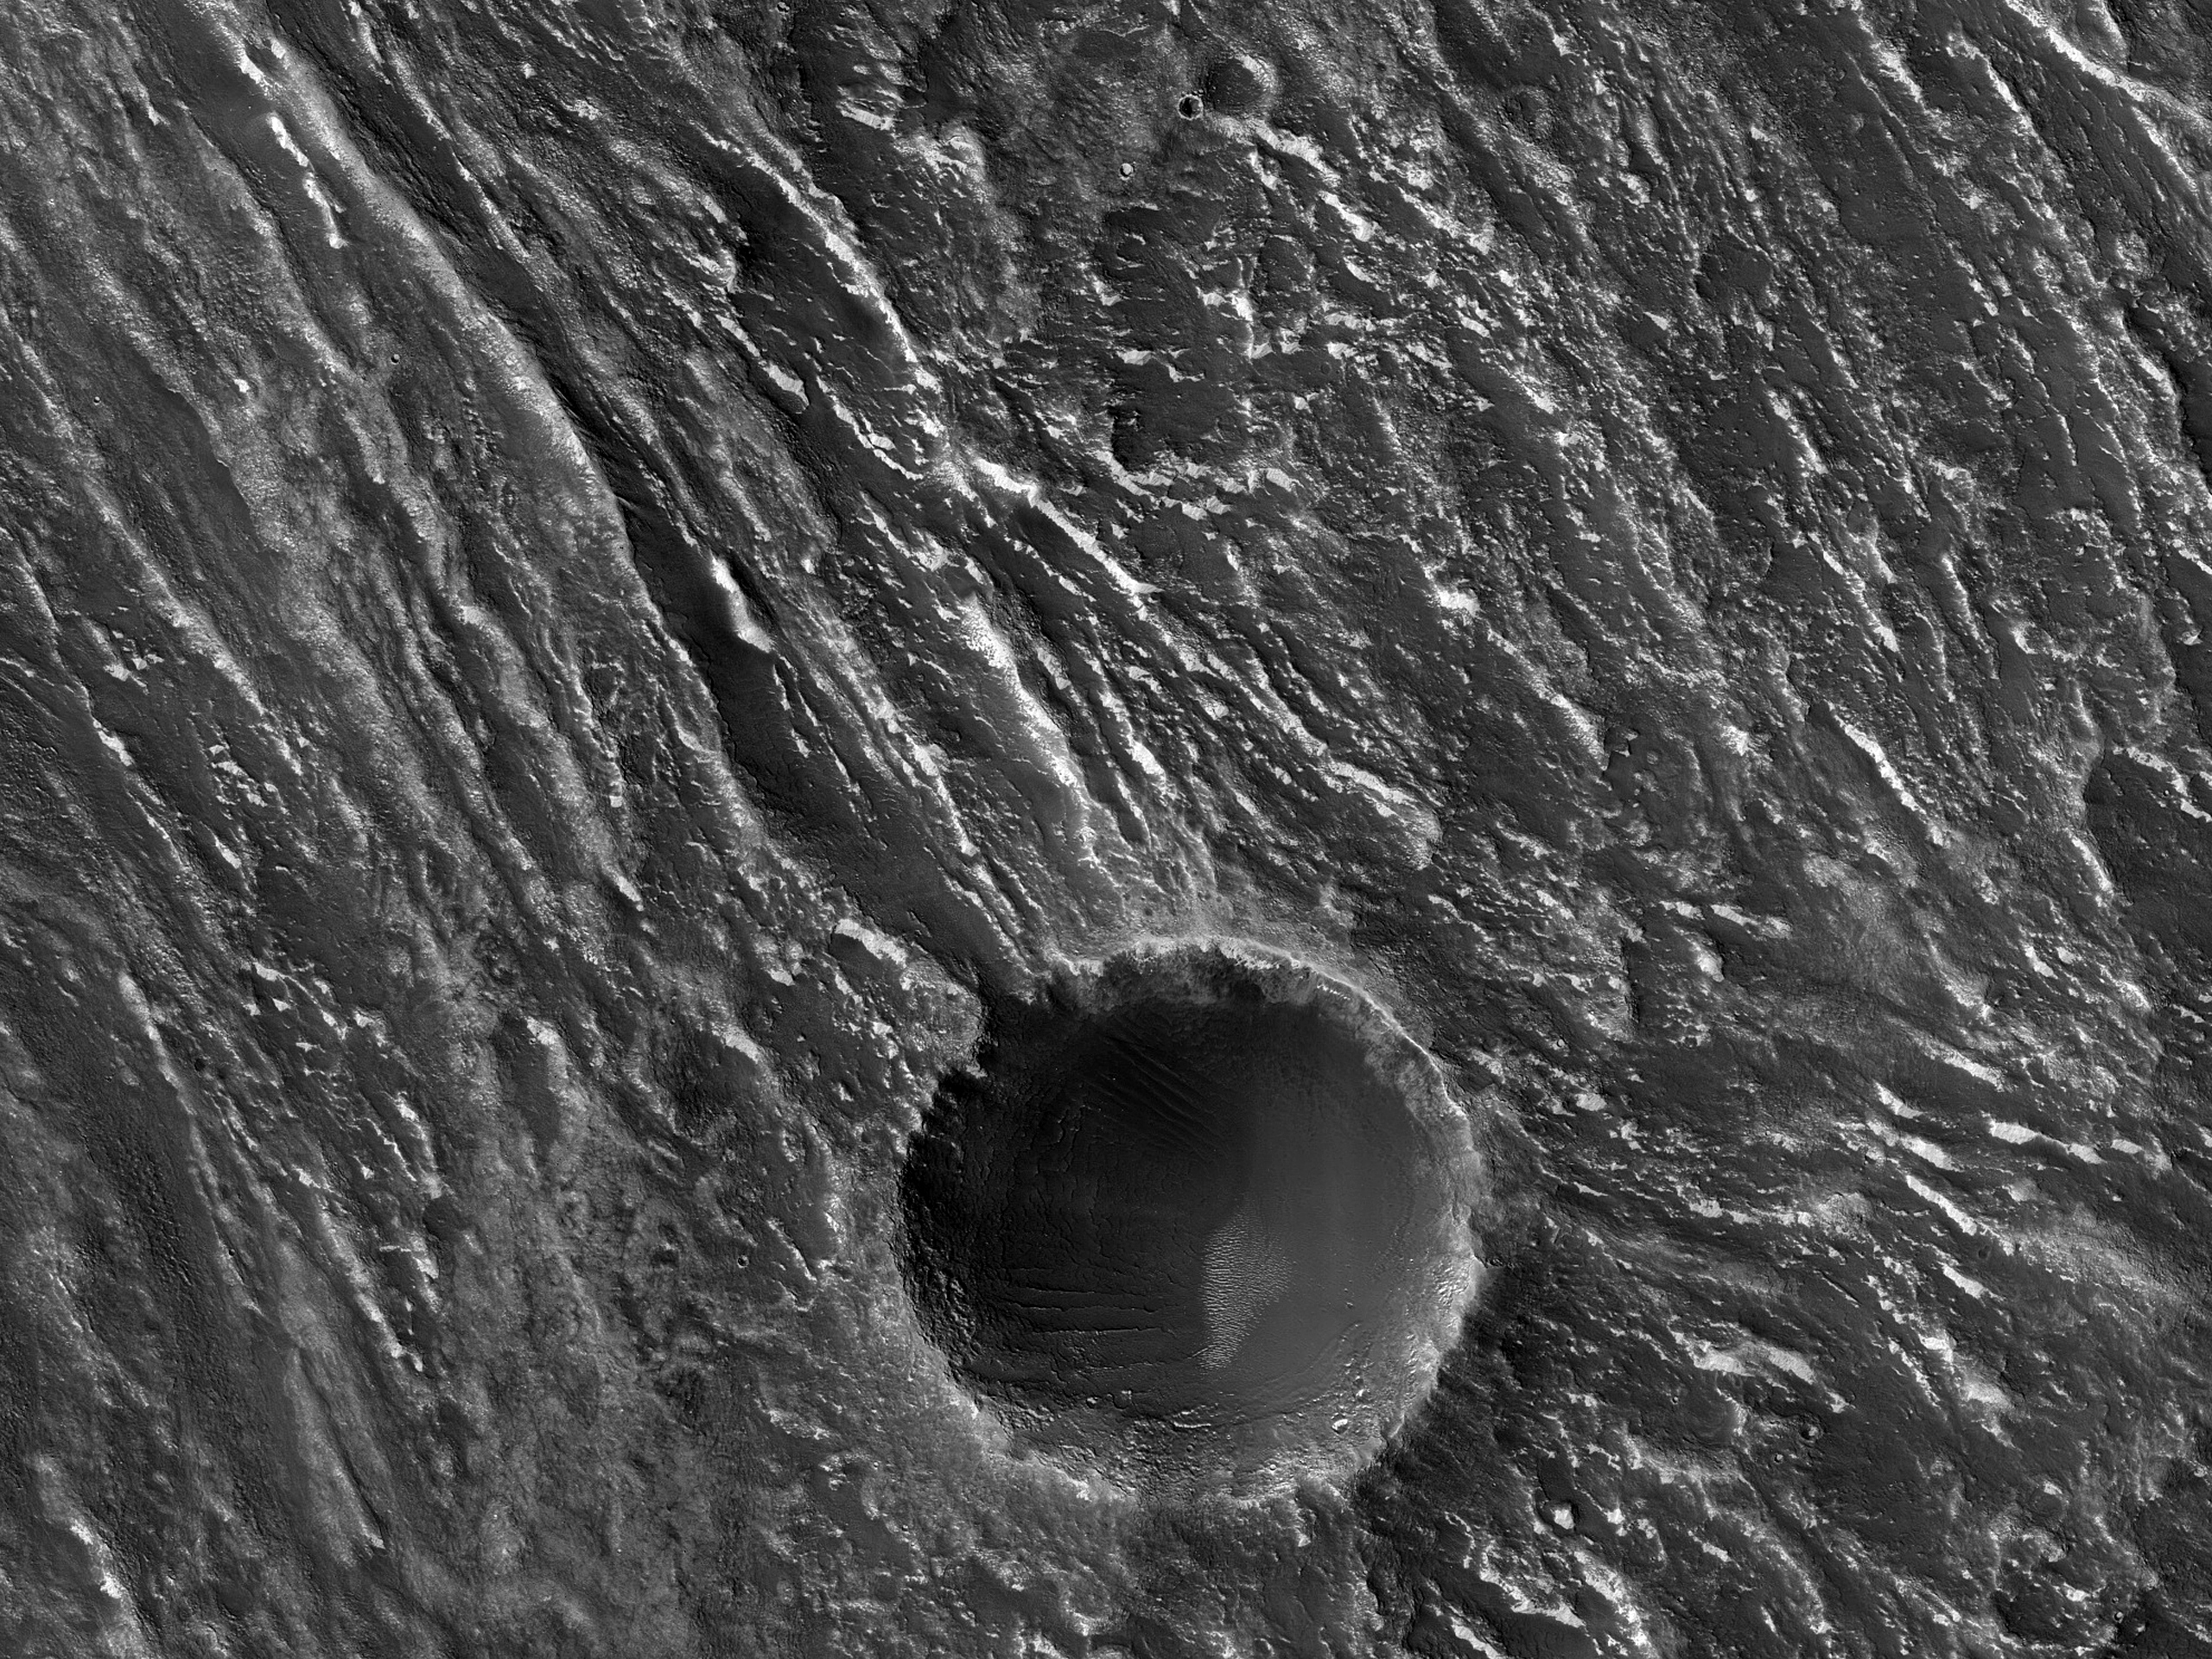 Close Ridges on a Crater Floor in Claritas Fossae